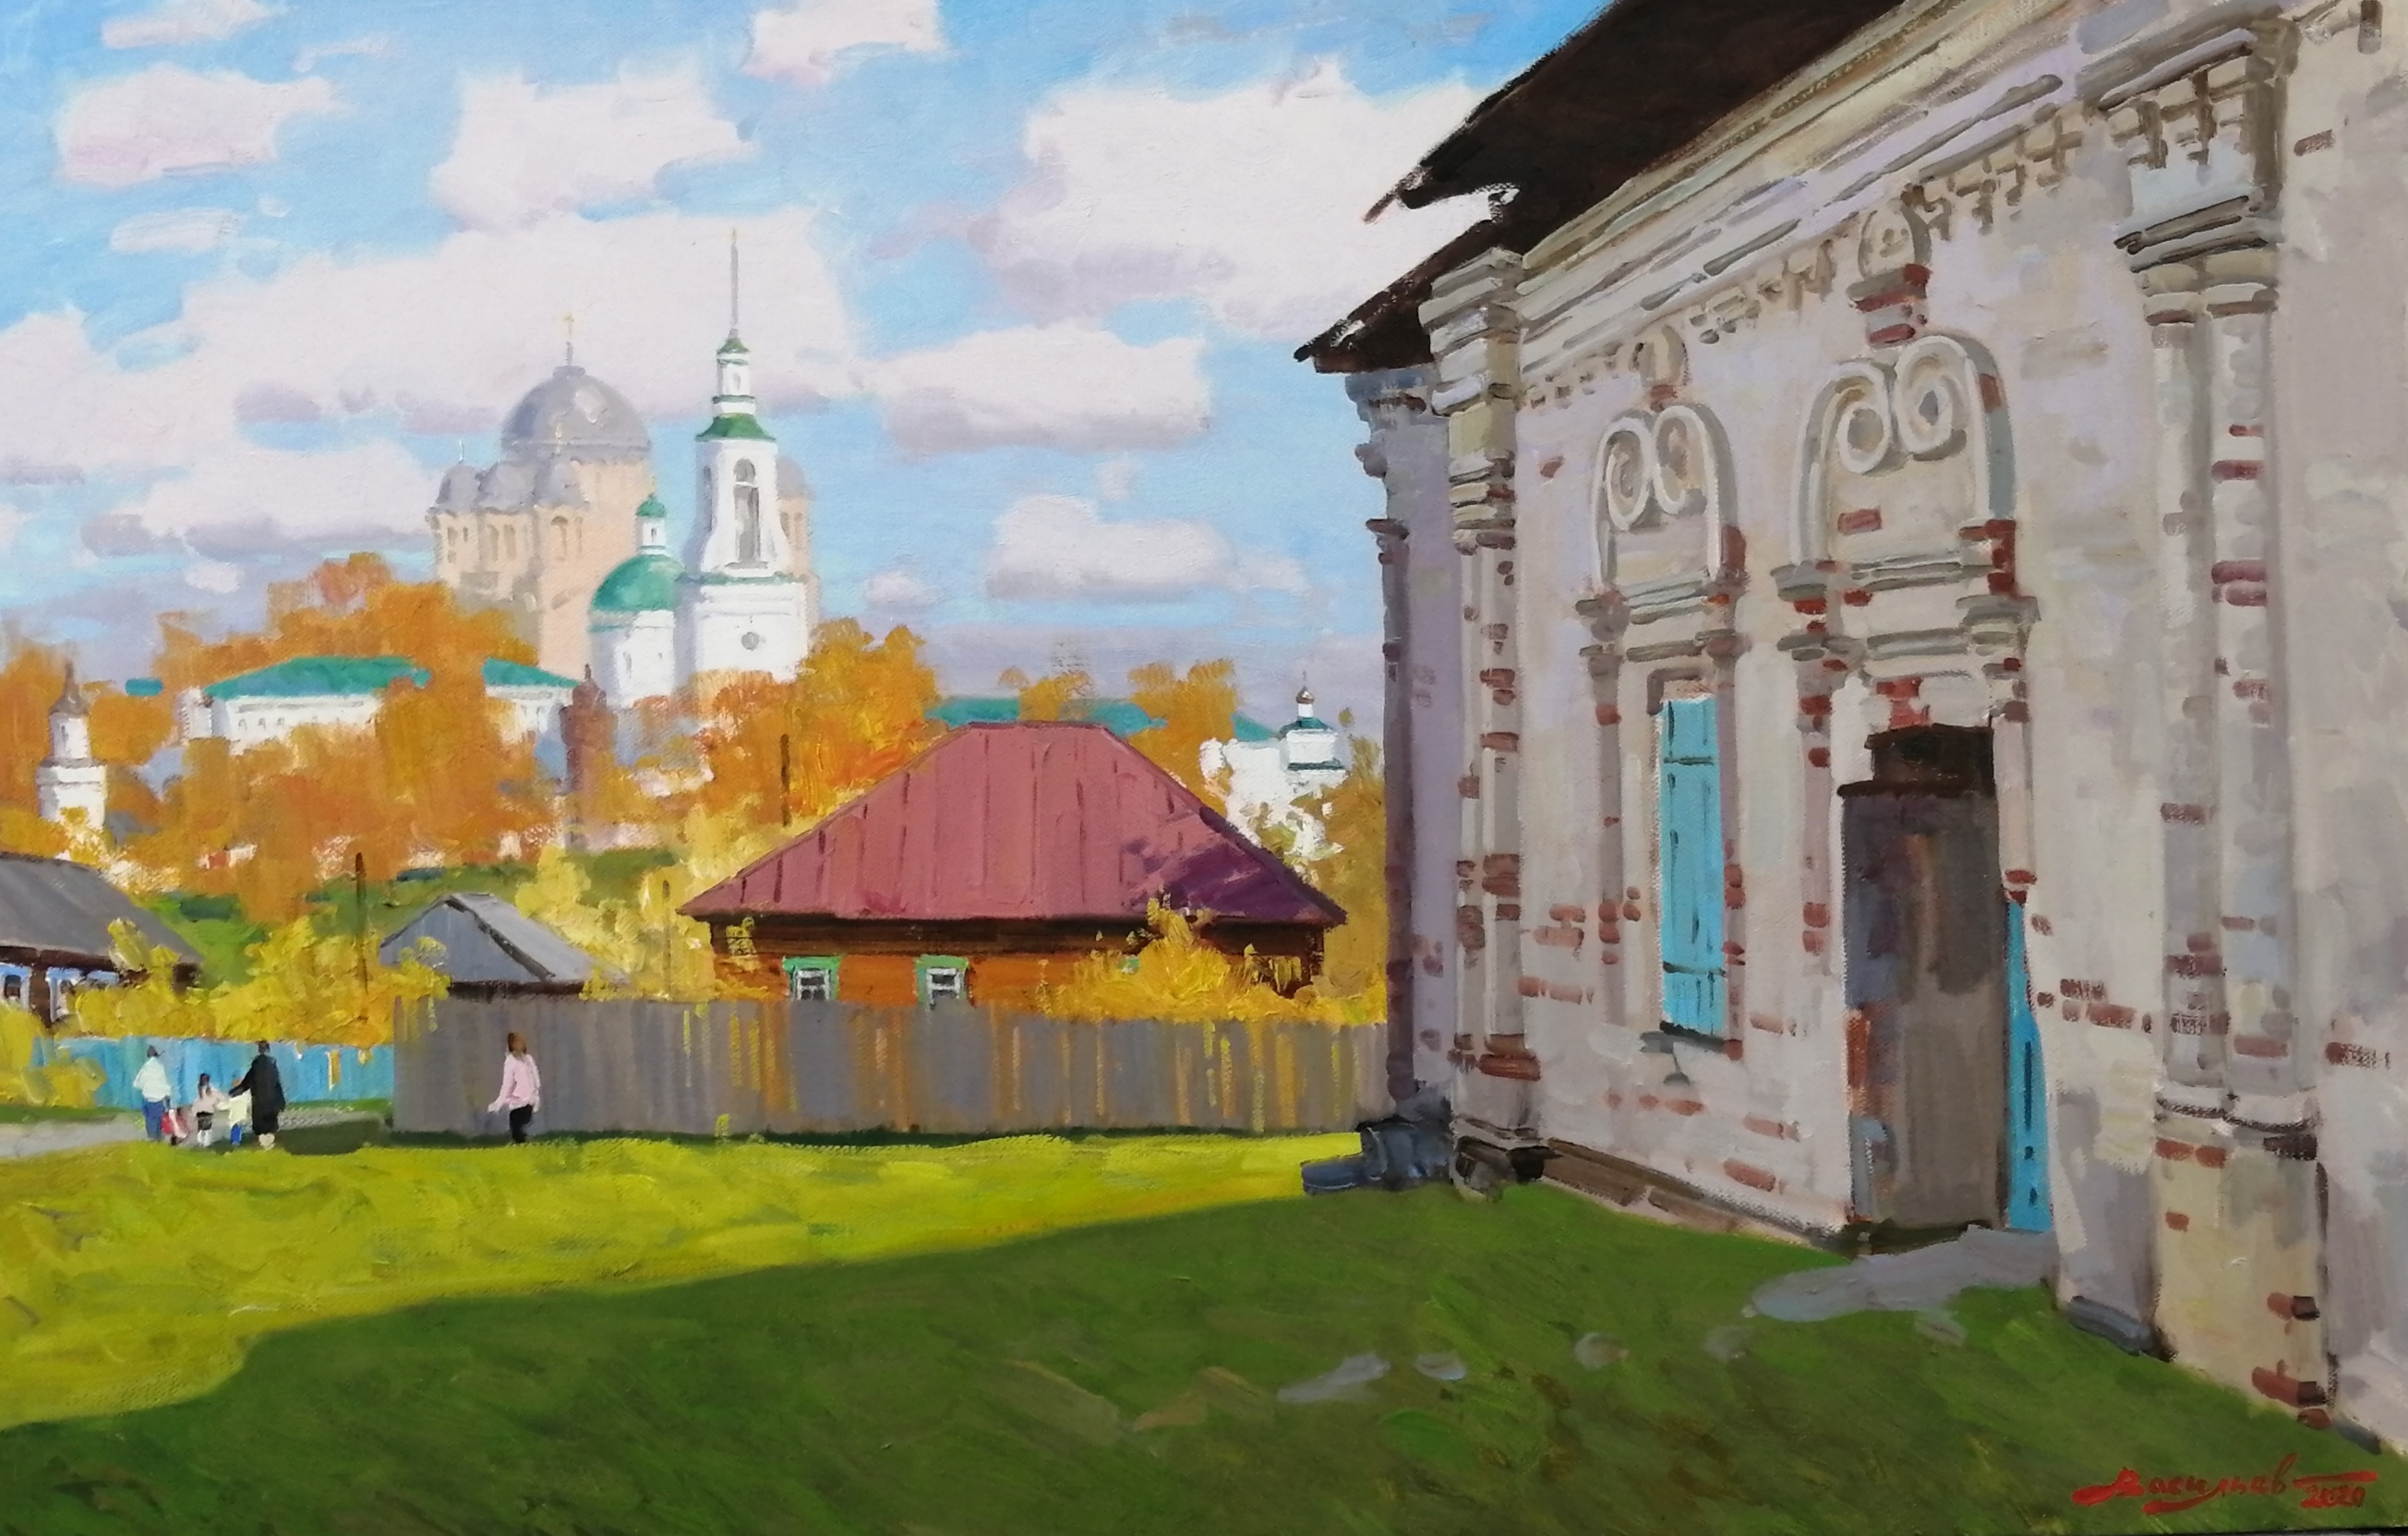 Noon in Verkhoturye - 1, Dmitry Vasiliev, Buy the painting Oil